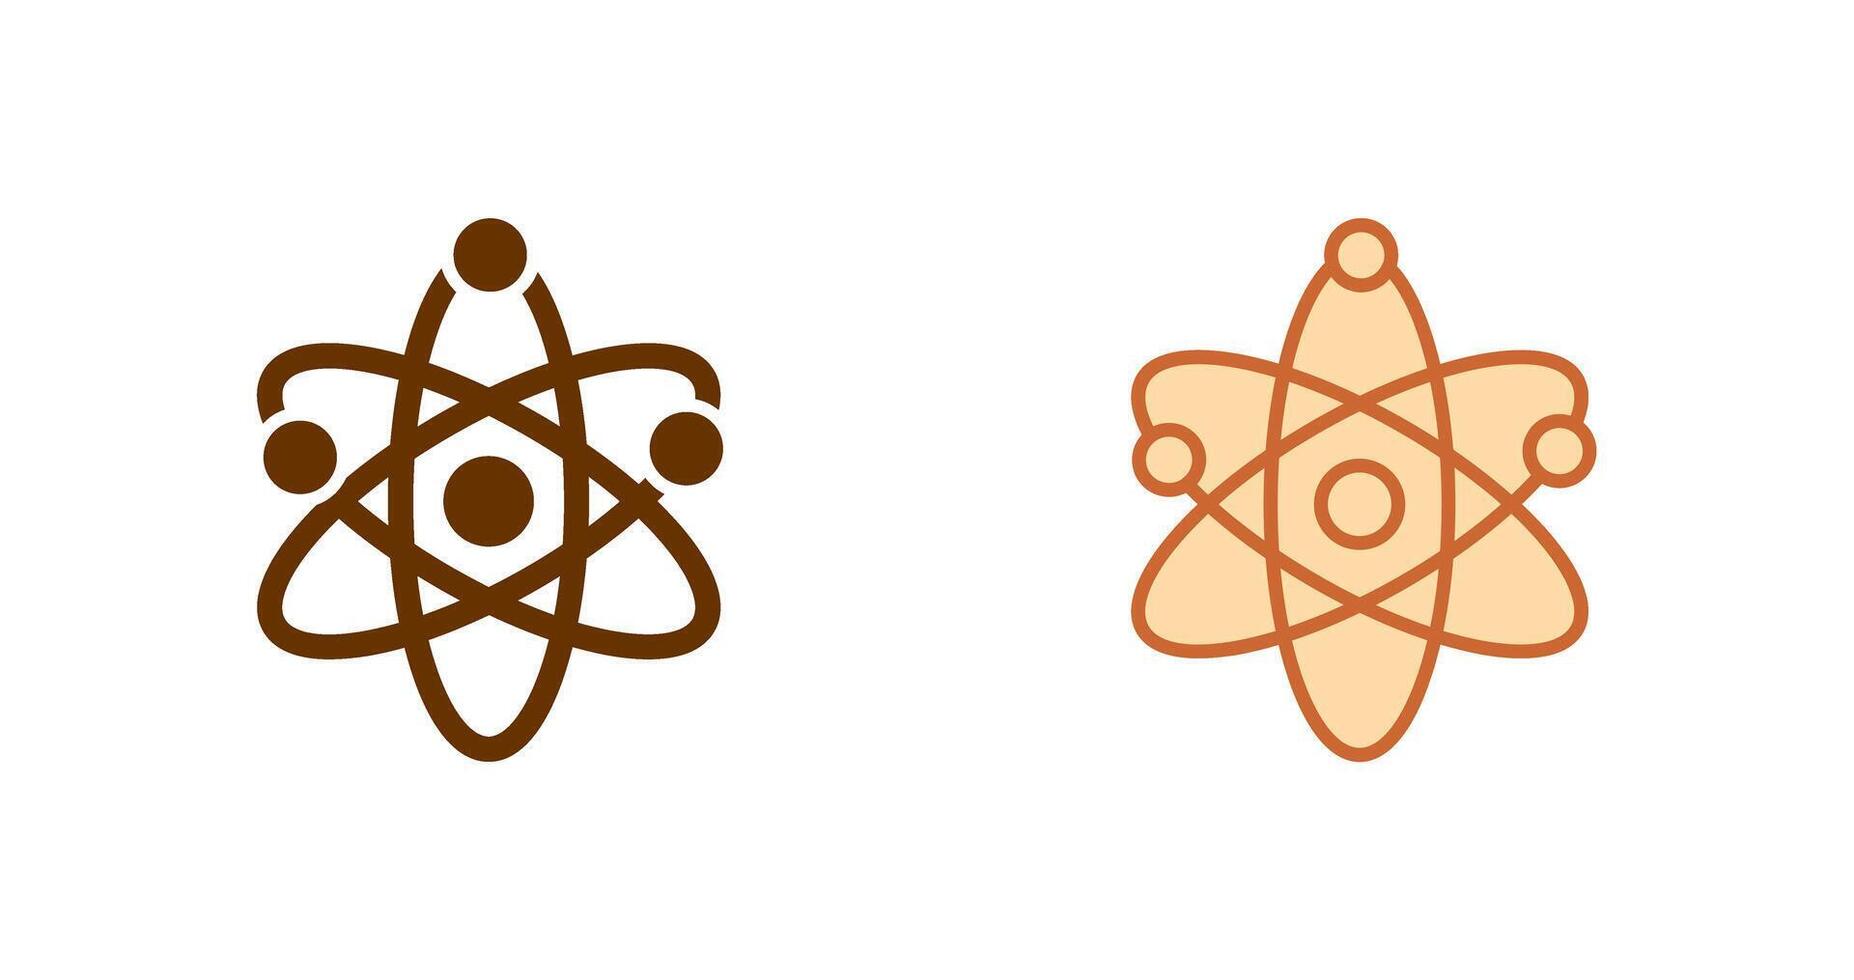 diseño de icono de átomo vector